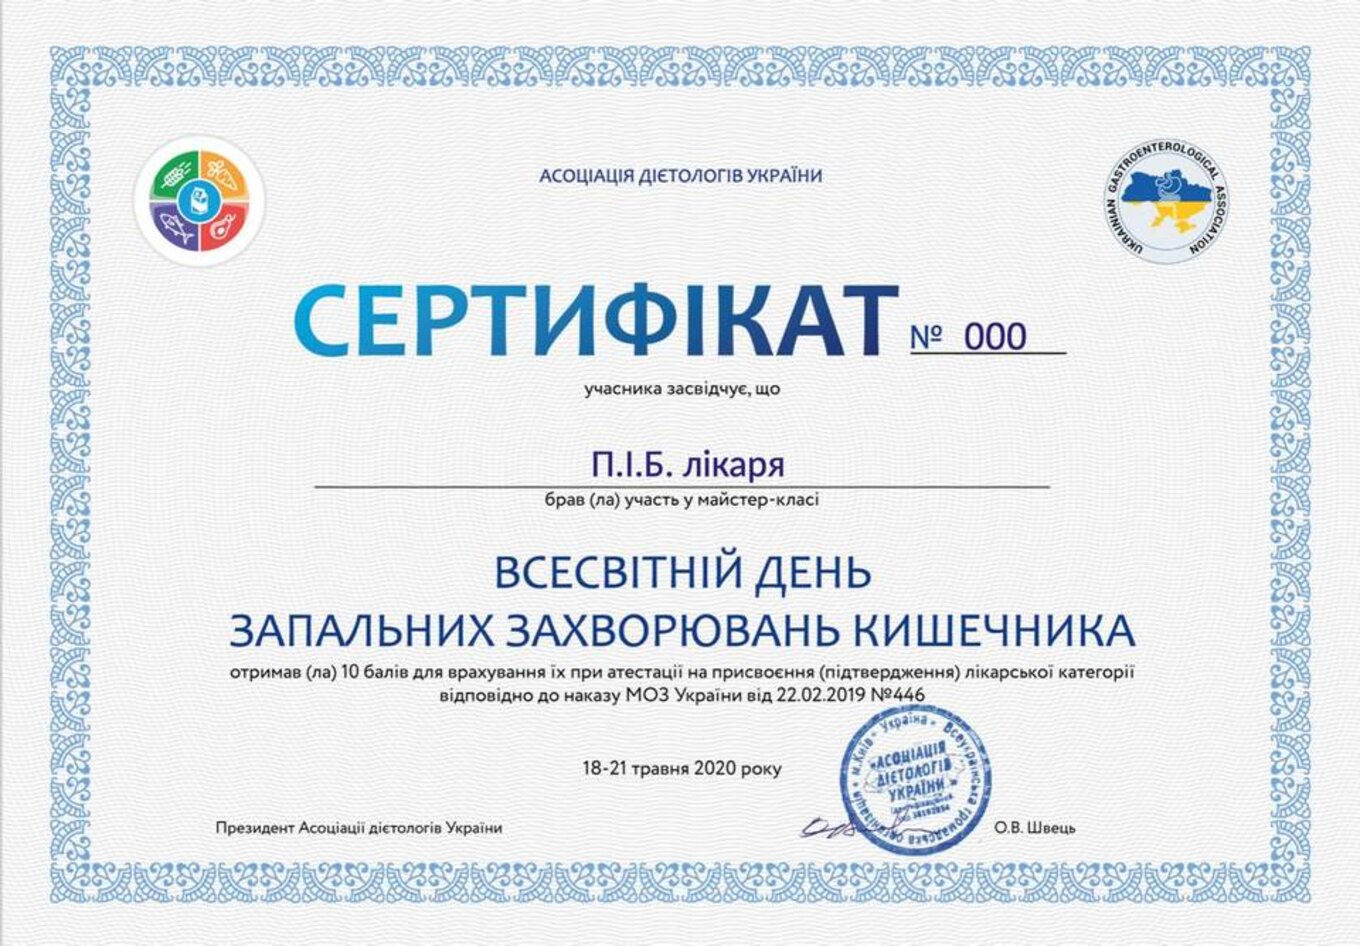 certificates/yedchik-anastasiya-oleksiyivna/erc-edchik-cert-04.jpg